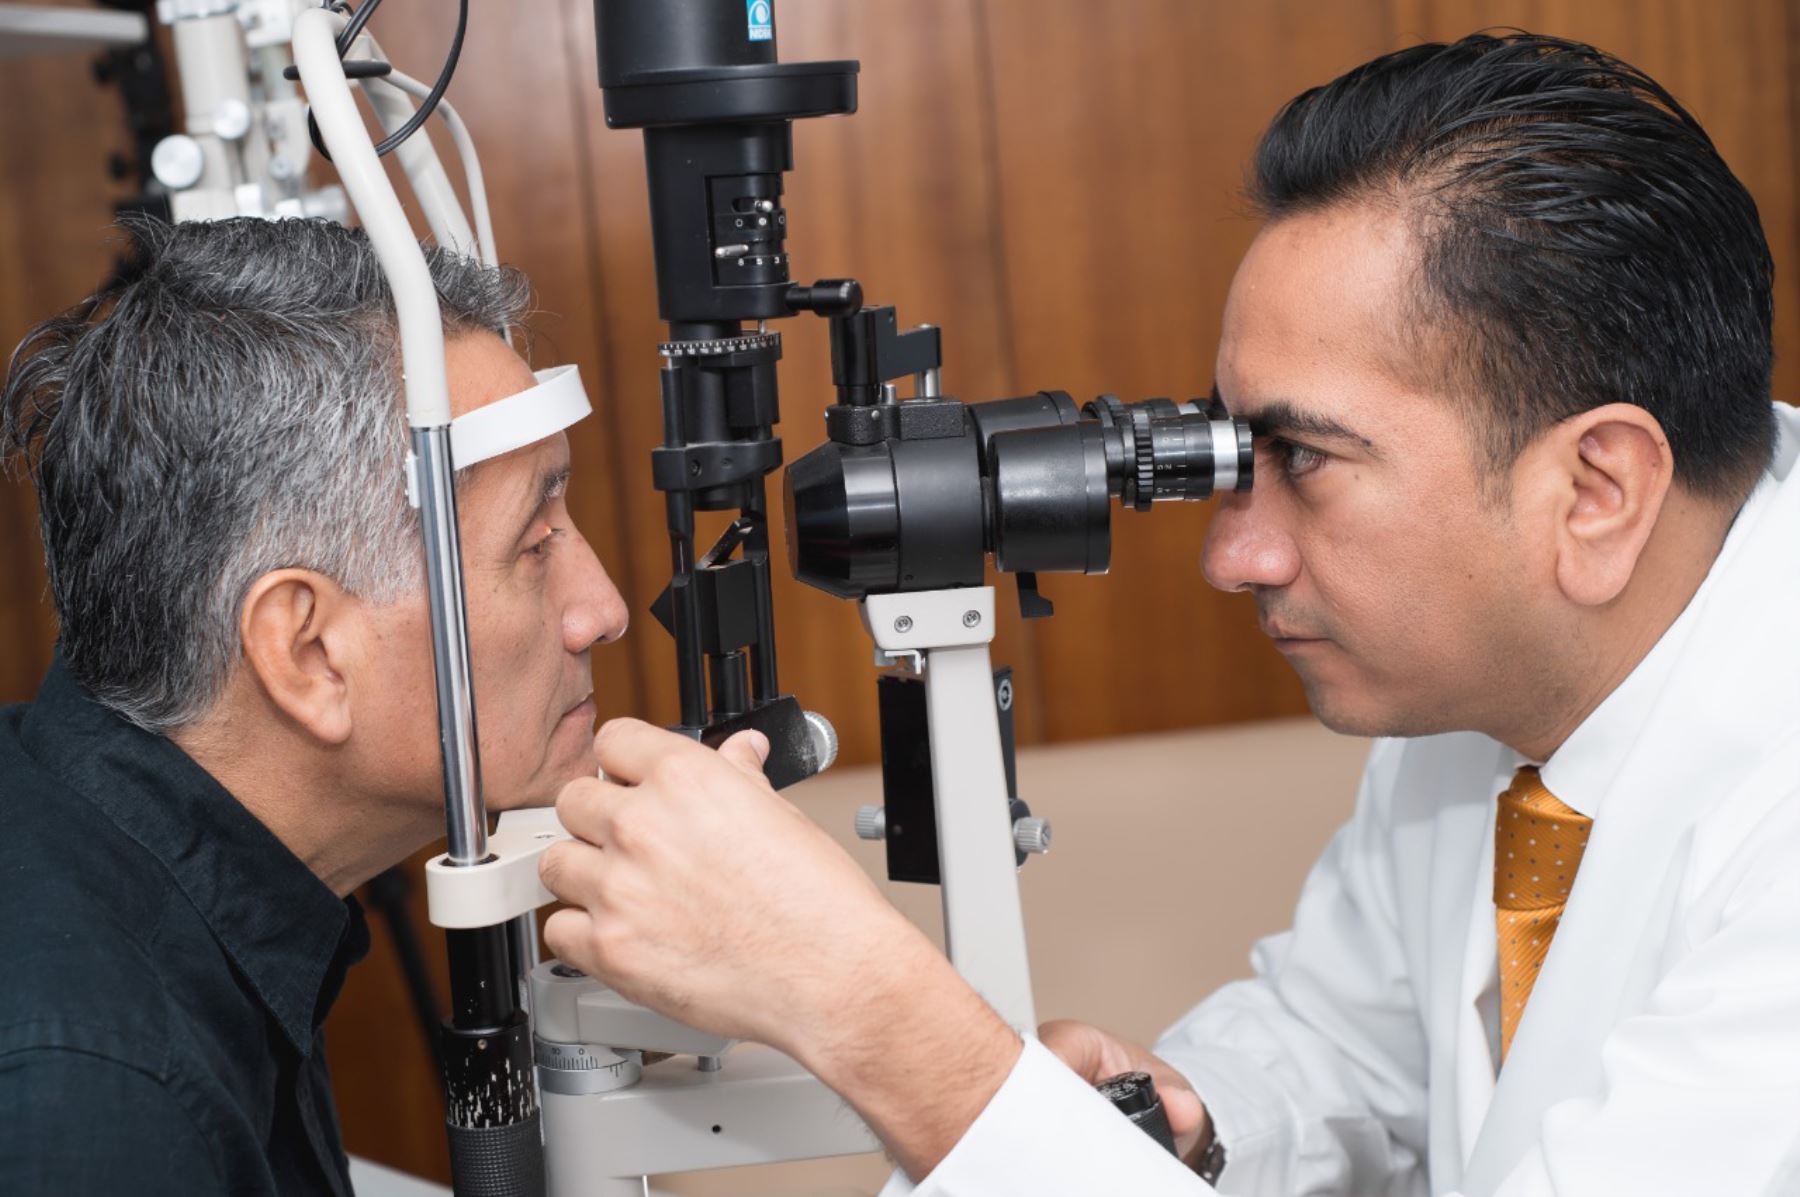 La principal causa de ceguera es la retinopatía diabética, que es un daño de la retina por falta de flujo sanguíneo generando pequeños infartos y sangrados dentro del ojo. Foto: ANDINA/Difusión